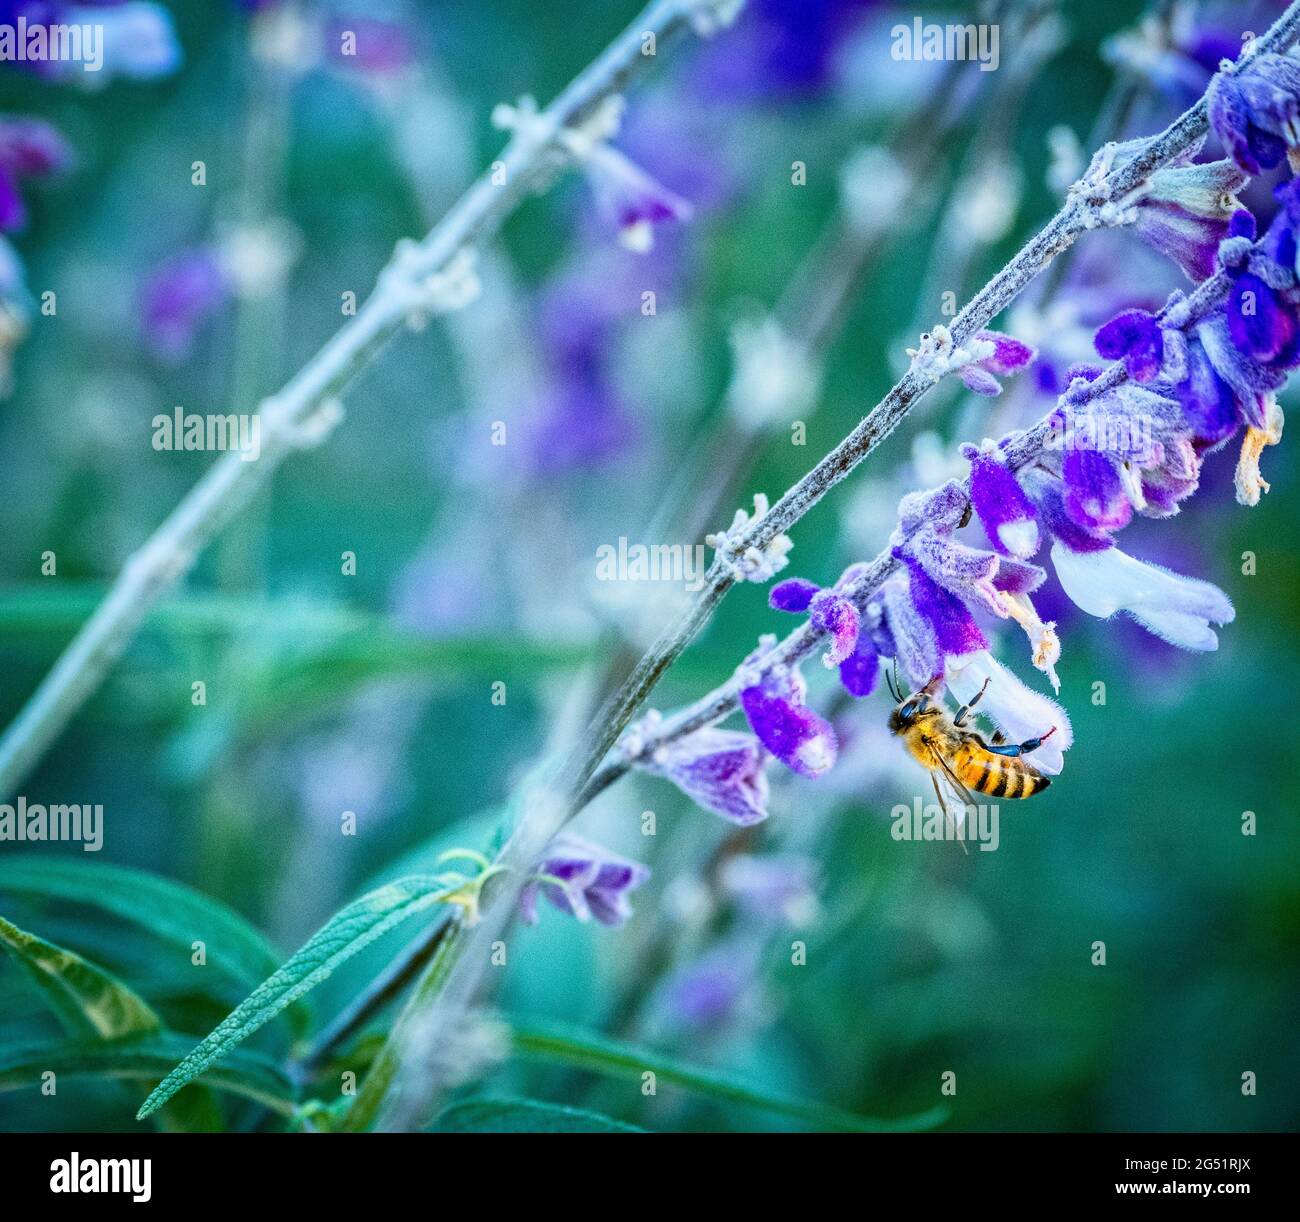 Gros plan de l'abeille sur la fleur pourpre Banque D'Images